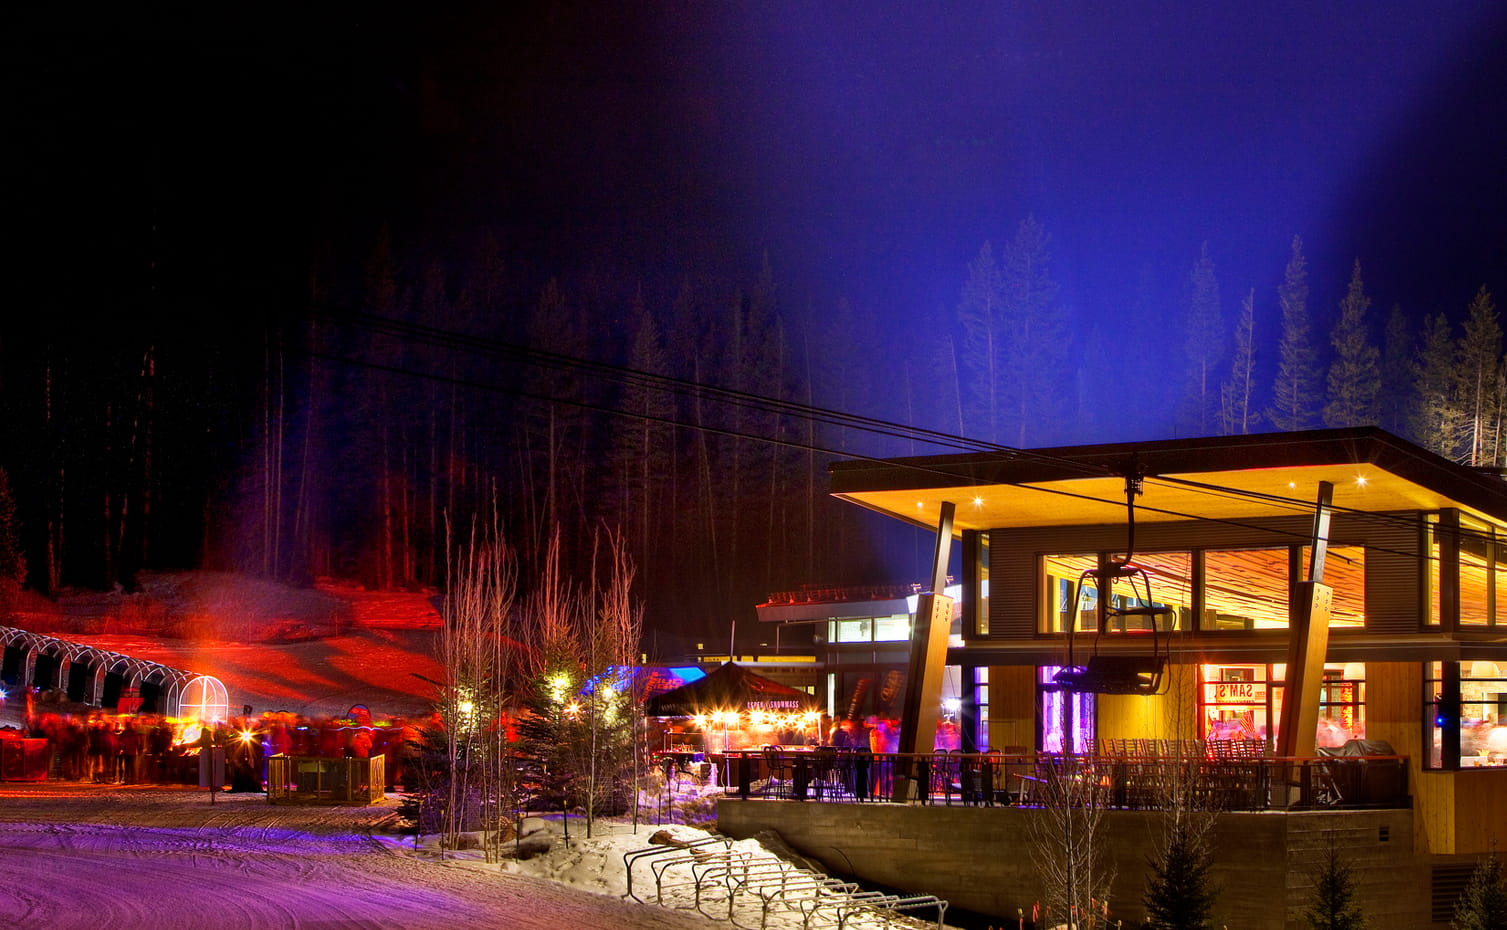 Ullr Nights glows at Elk Camp at night on Snowmass